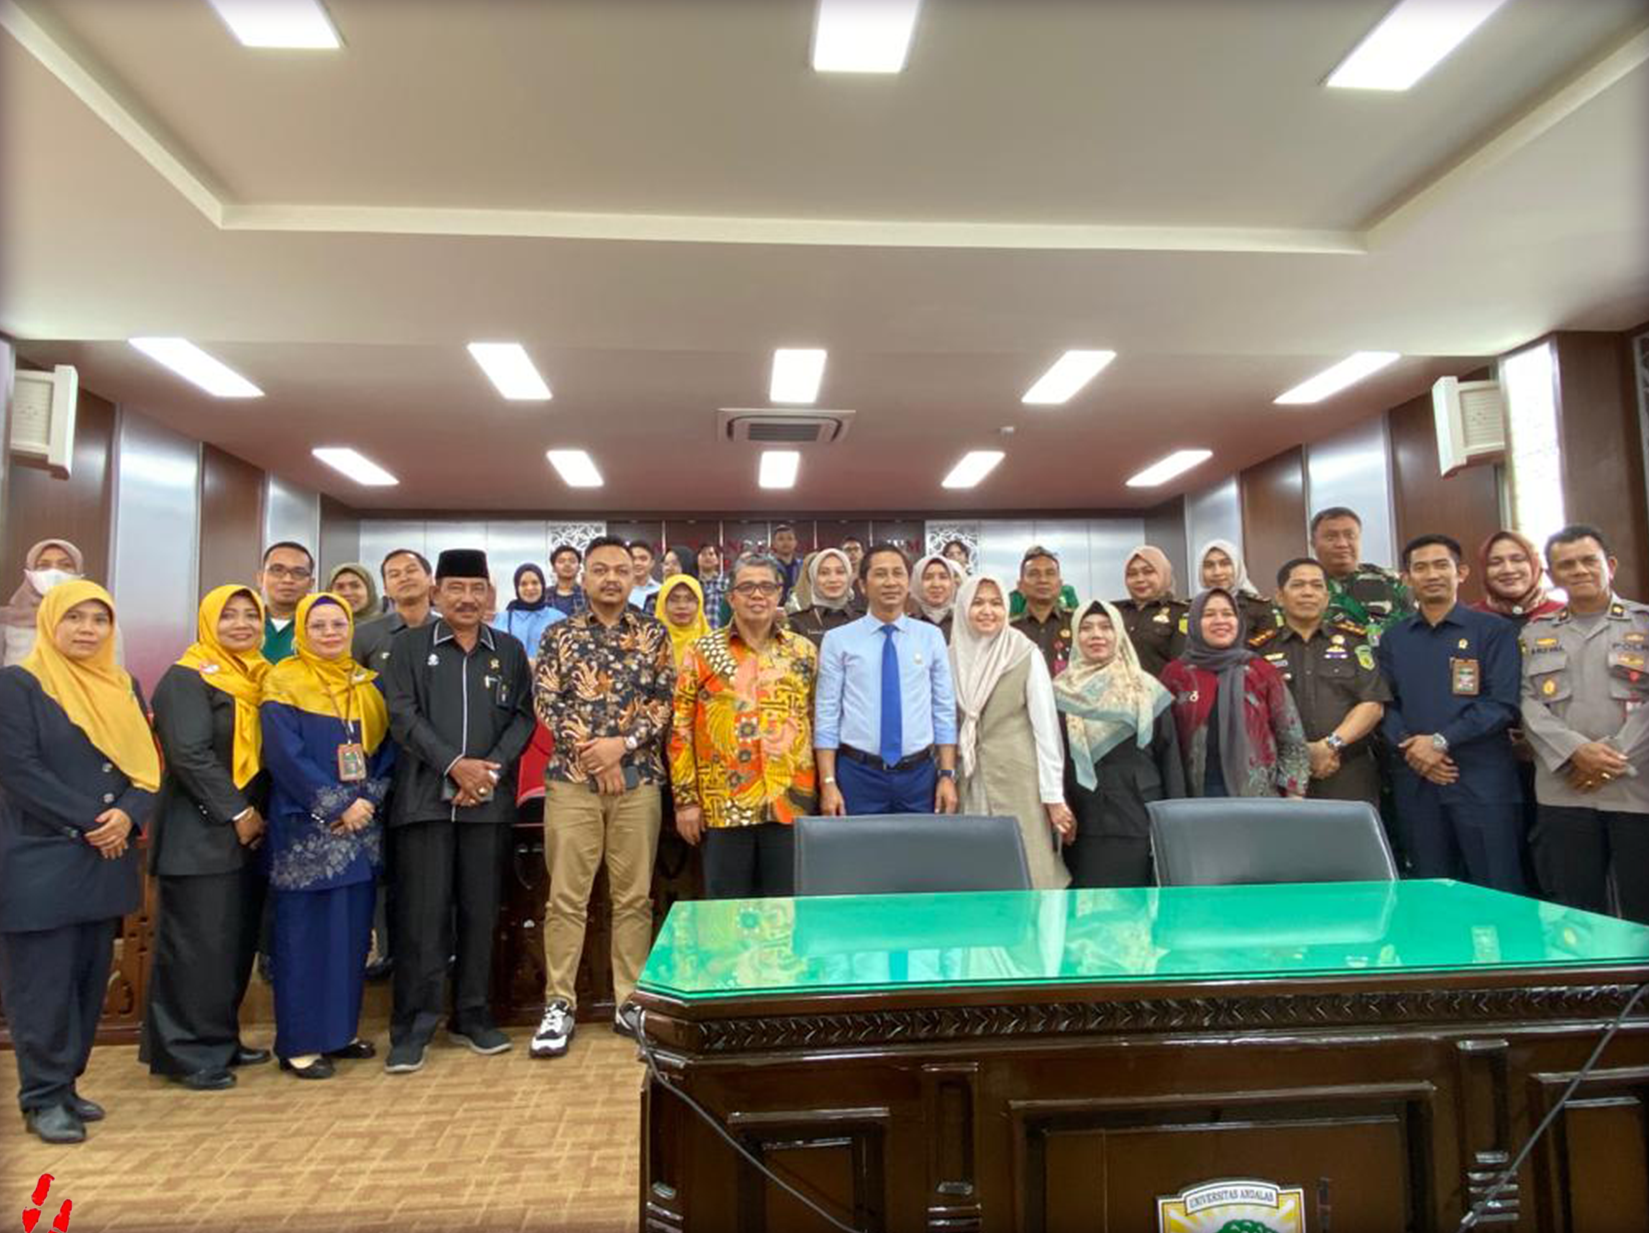 Kuliah Umum bersama Ketua Komisi Yudisial Prof. Dr. Mukti Fajar Nur Dewata, SH., MH. dengan tema Menjaga Integritas Hukum dan Membangun Kredibilitas Peradilan